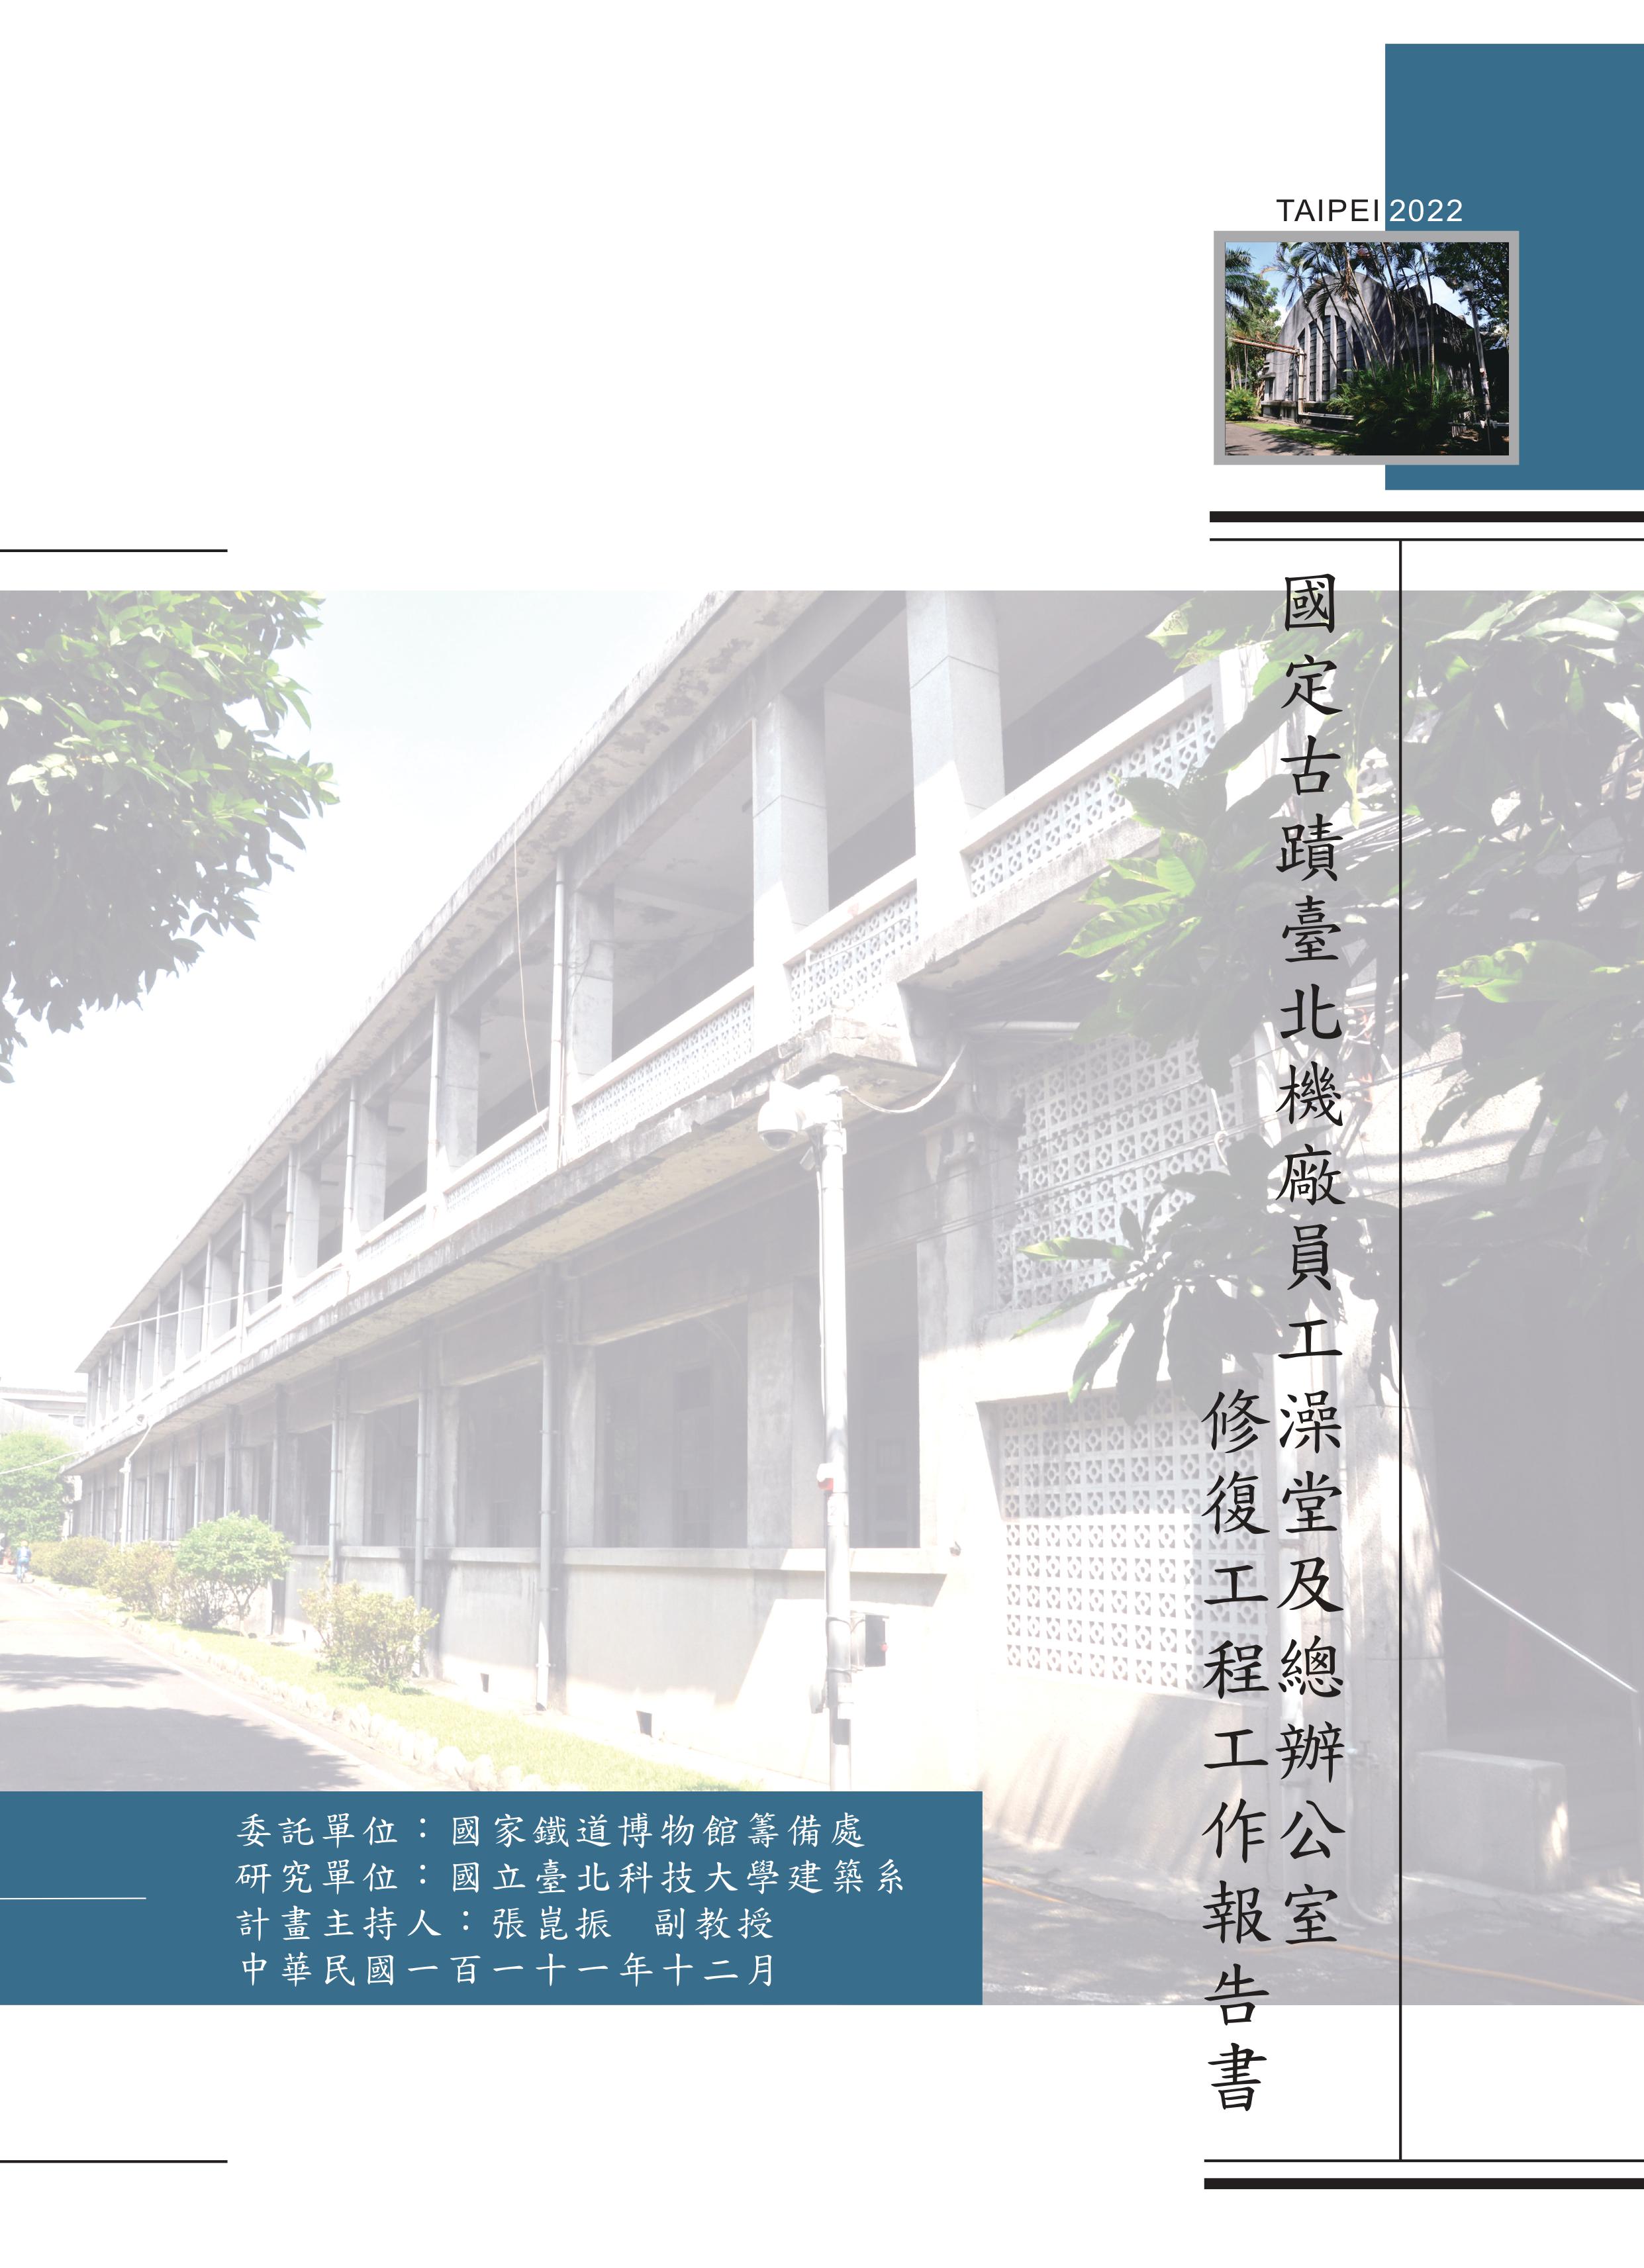 國定古蹟臺北機廠員工澡堂及總辦公室修復工程工作報告書